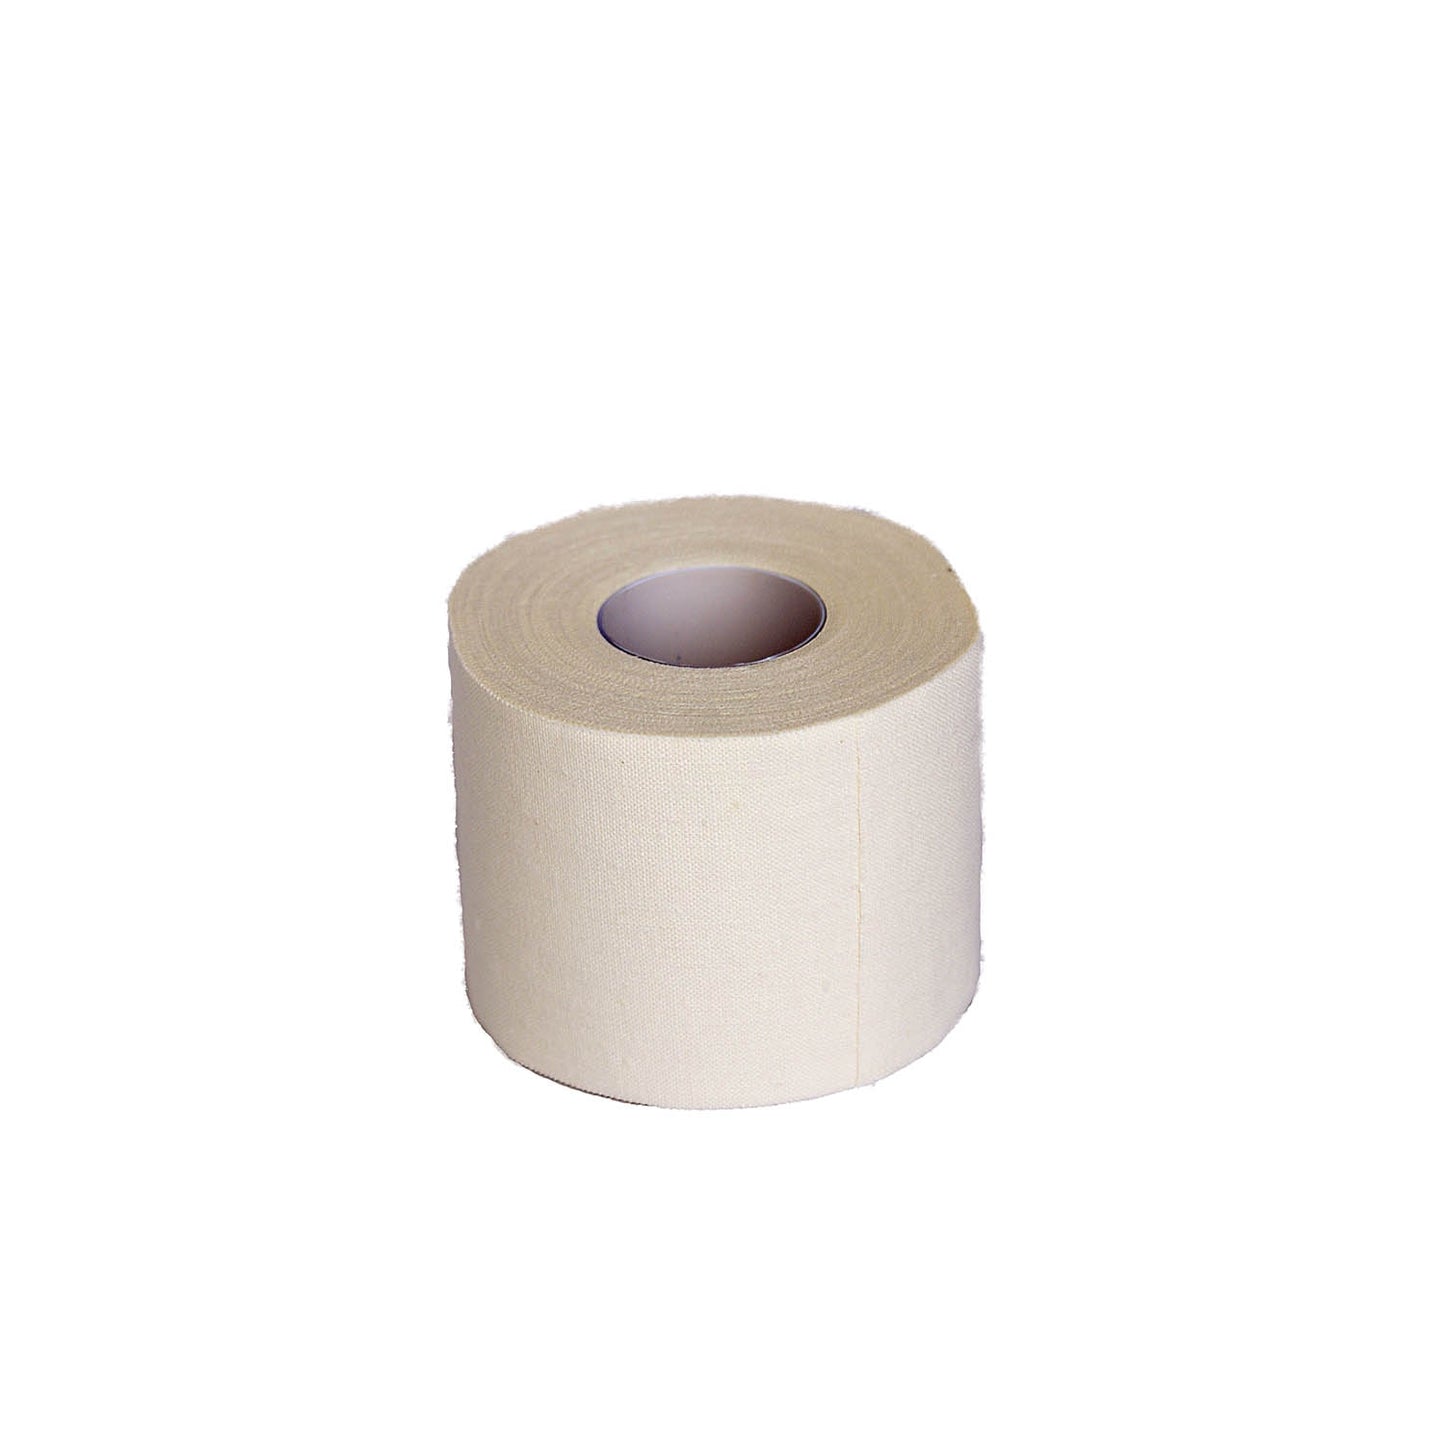 Zinc Oxide Tape 7.5cm x 10m (1)